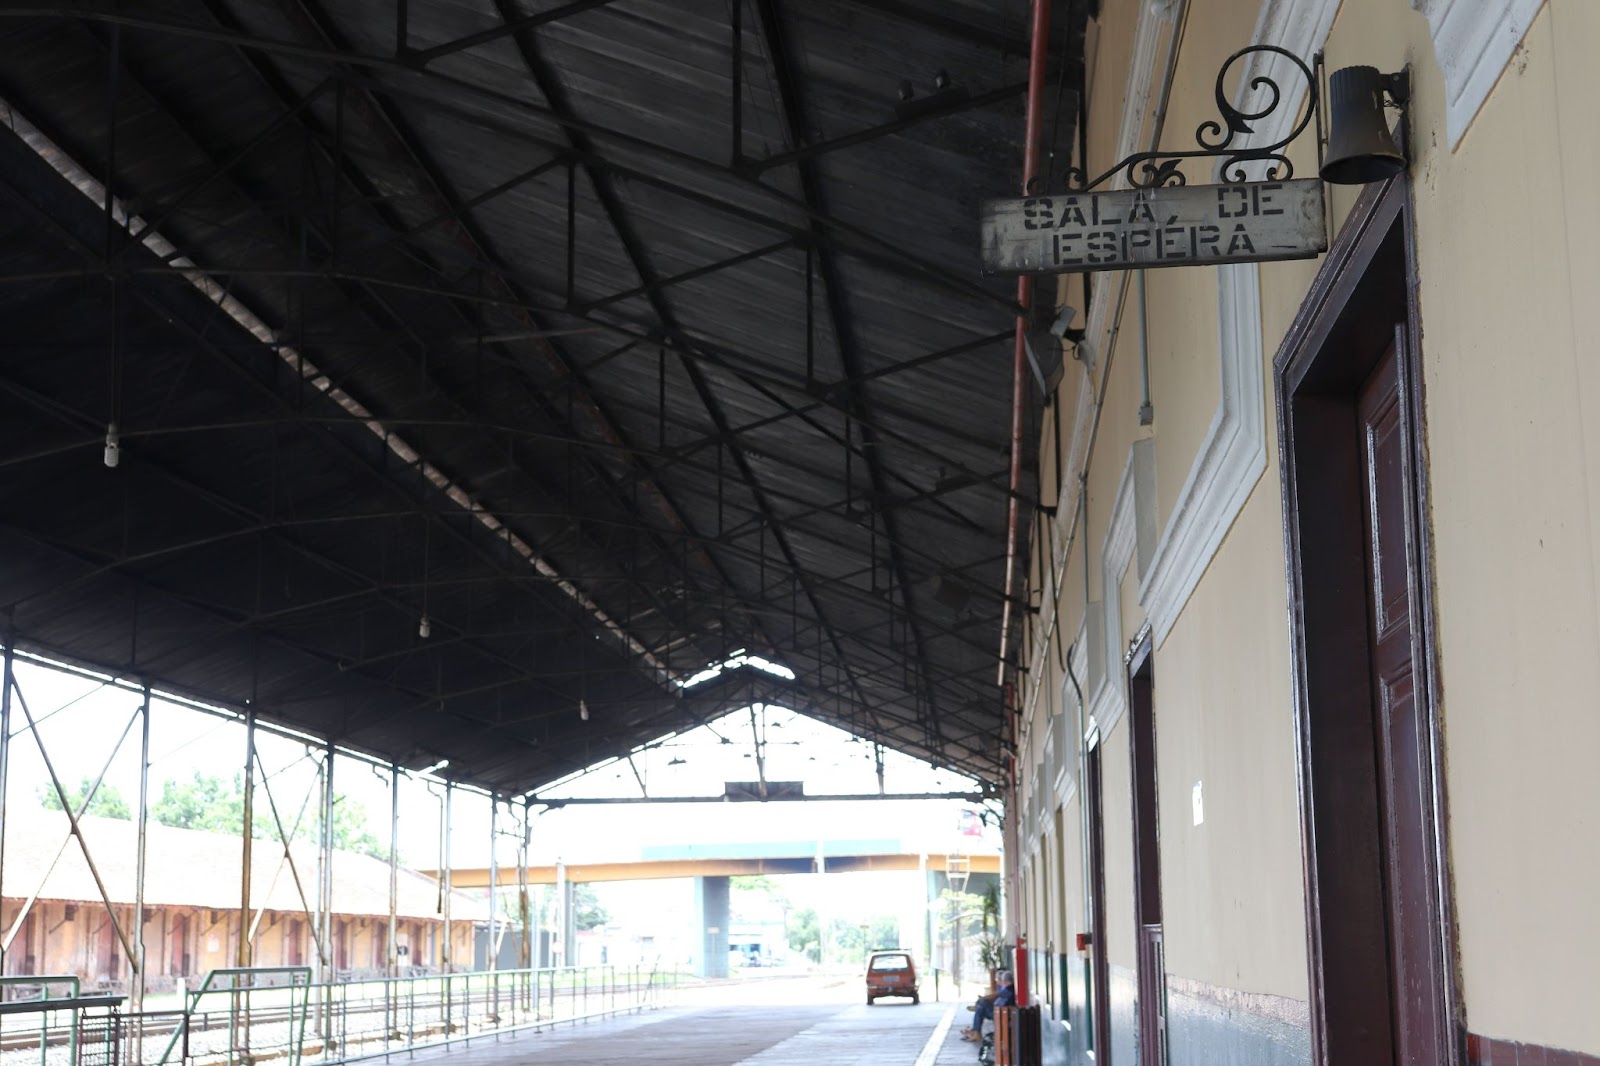 Antiga Estação Ferroviária de São Carlos, com placa escrito “Sala de Espera” em cima de uma das portas da área coberta do local.